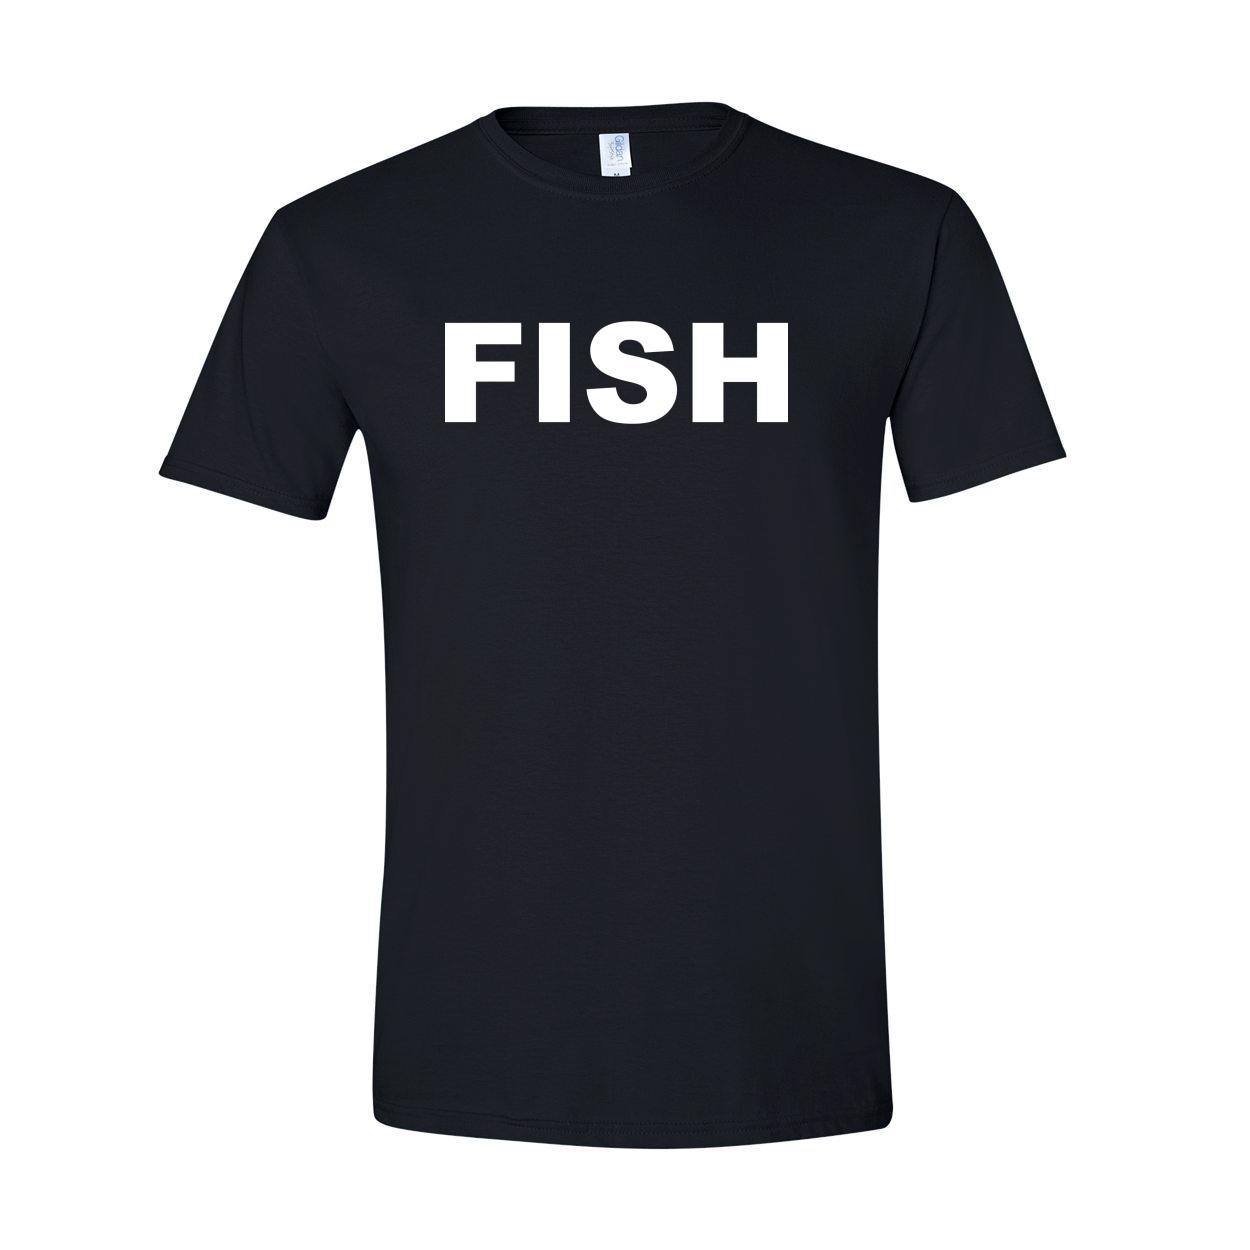 Fish Brand Logo Classic Premium Sublimated Tank Top